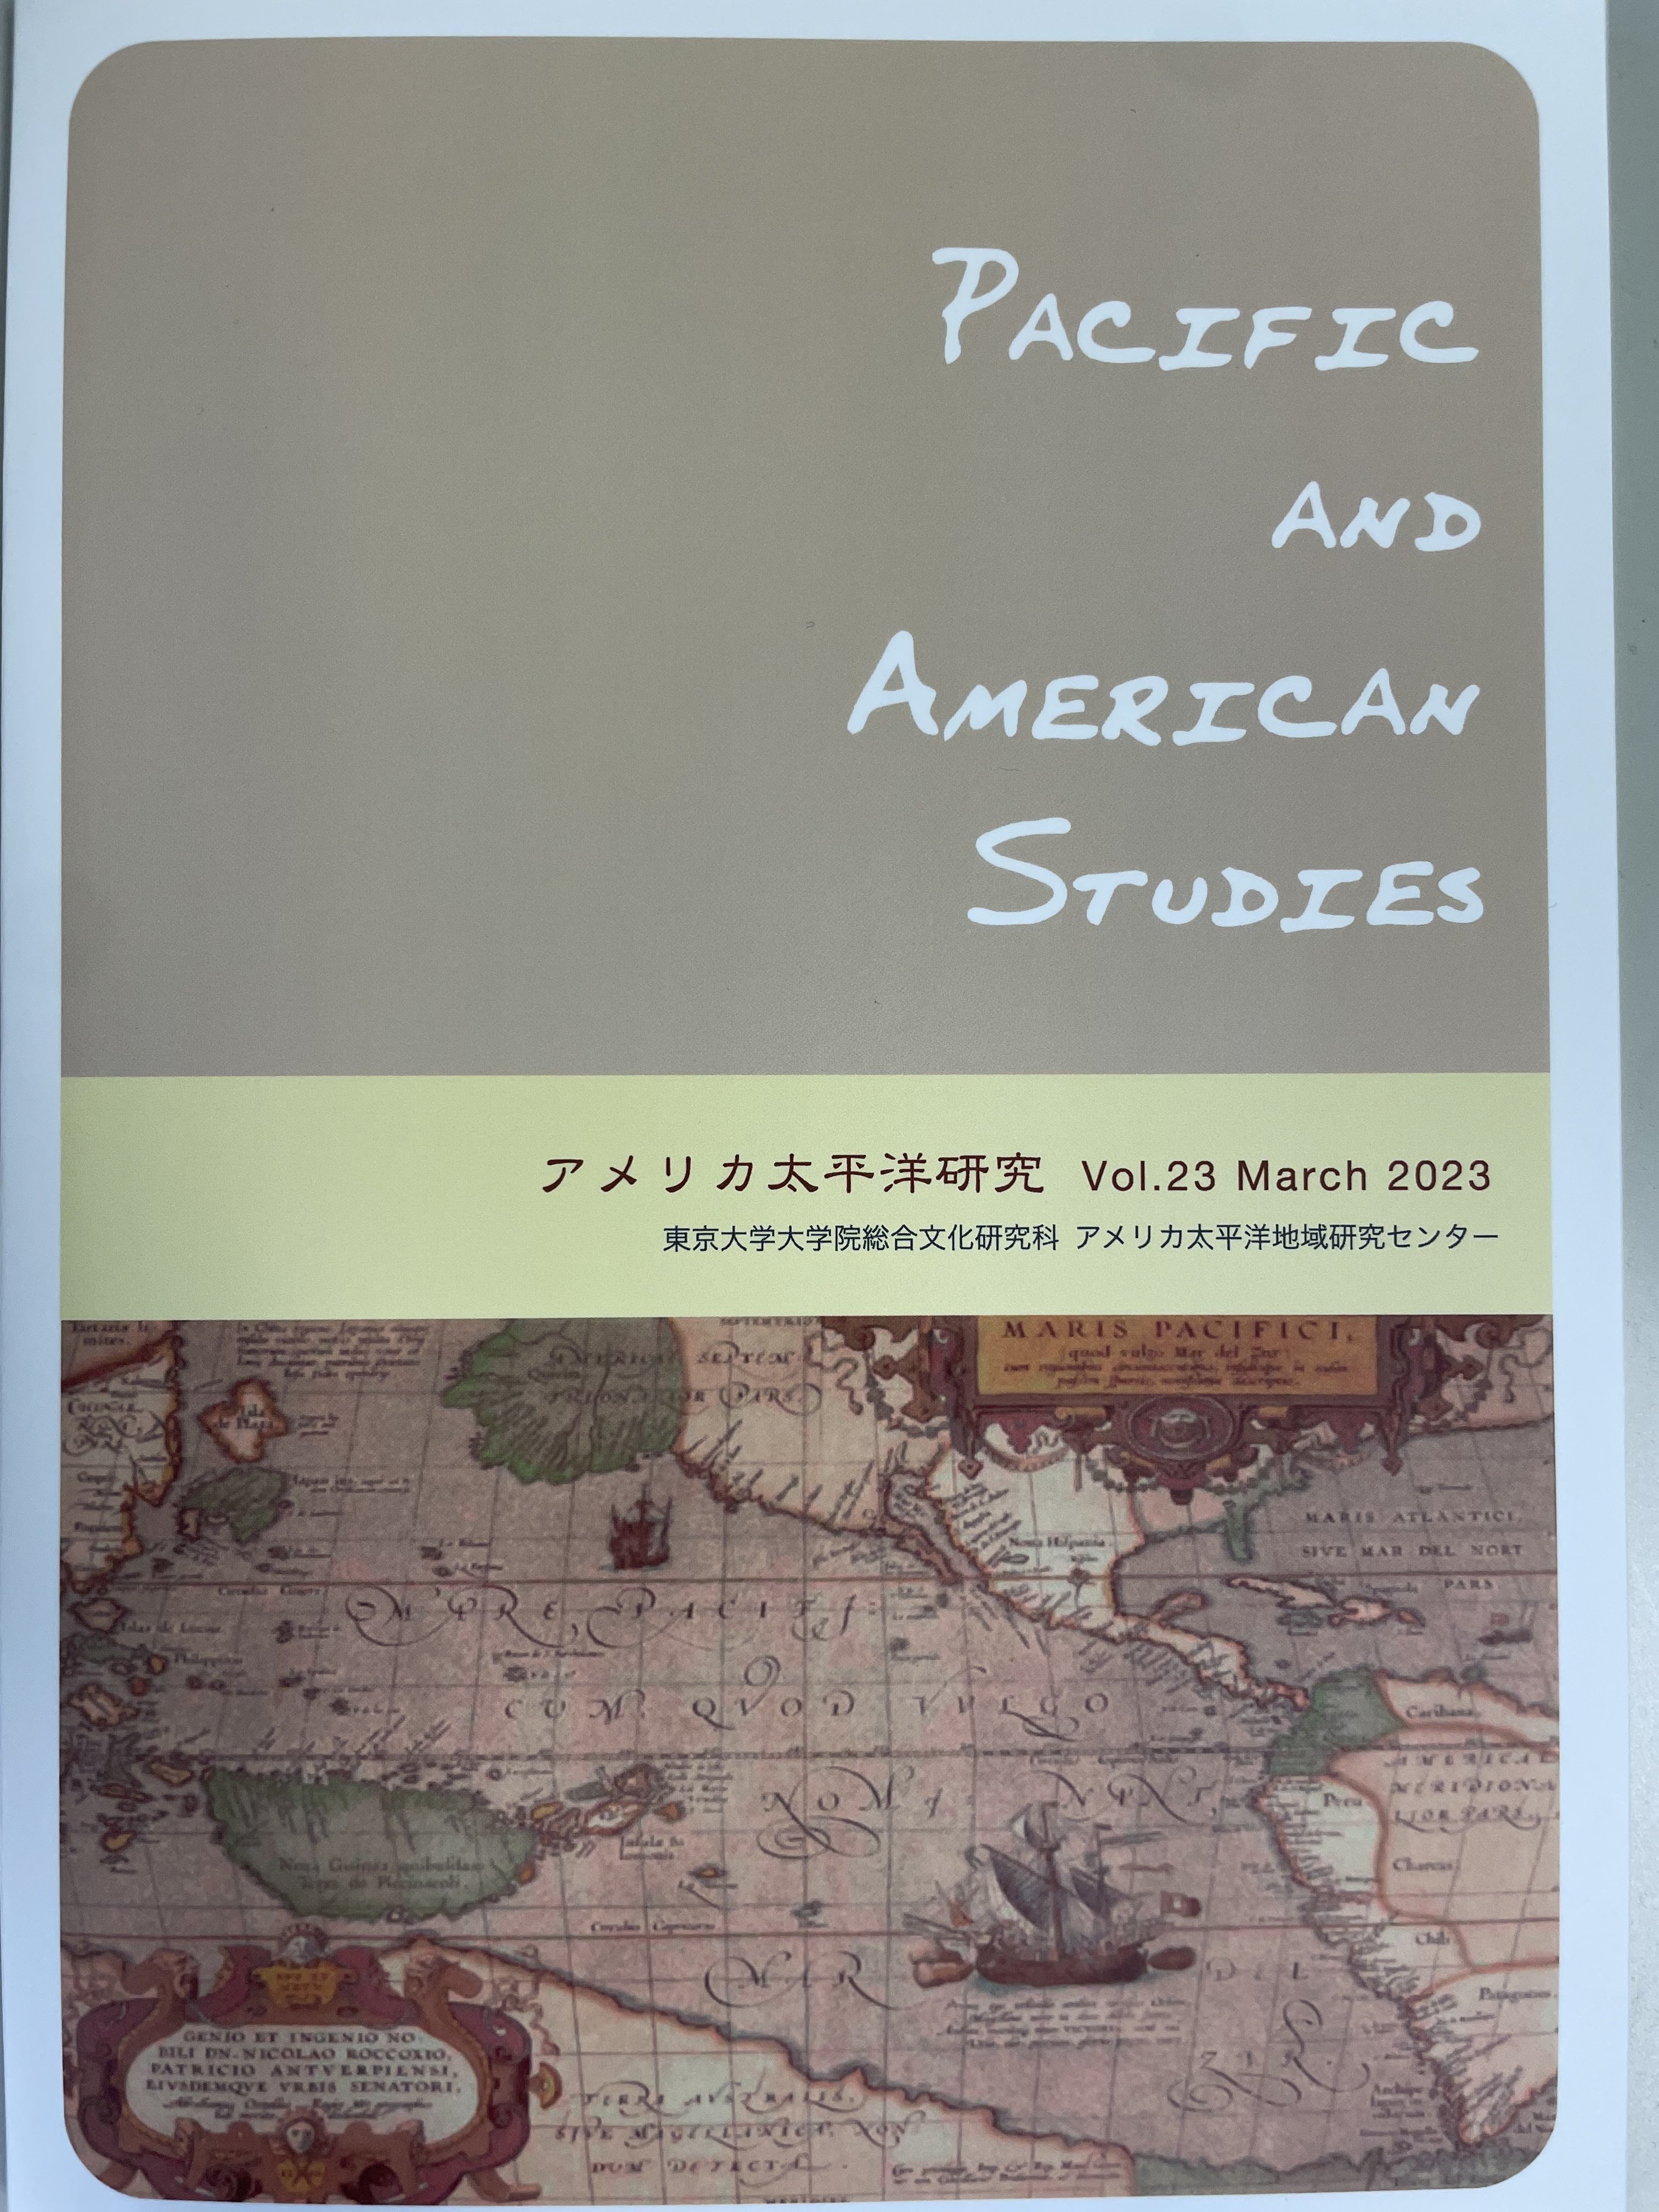 アメリカ太平洋研究